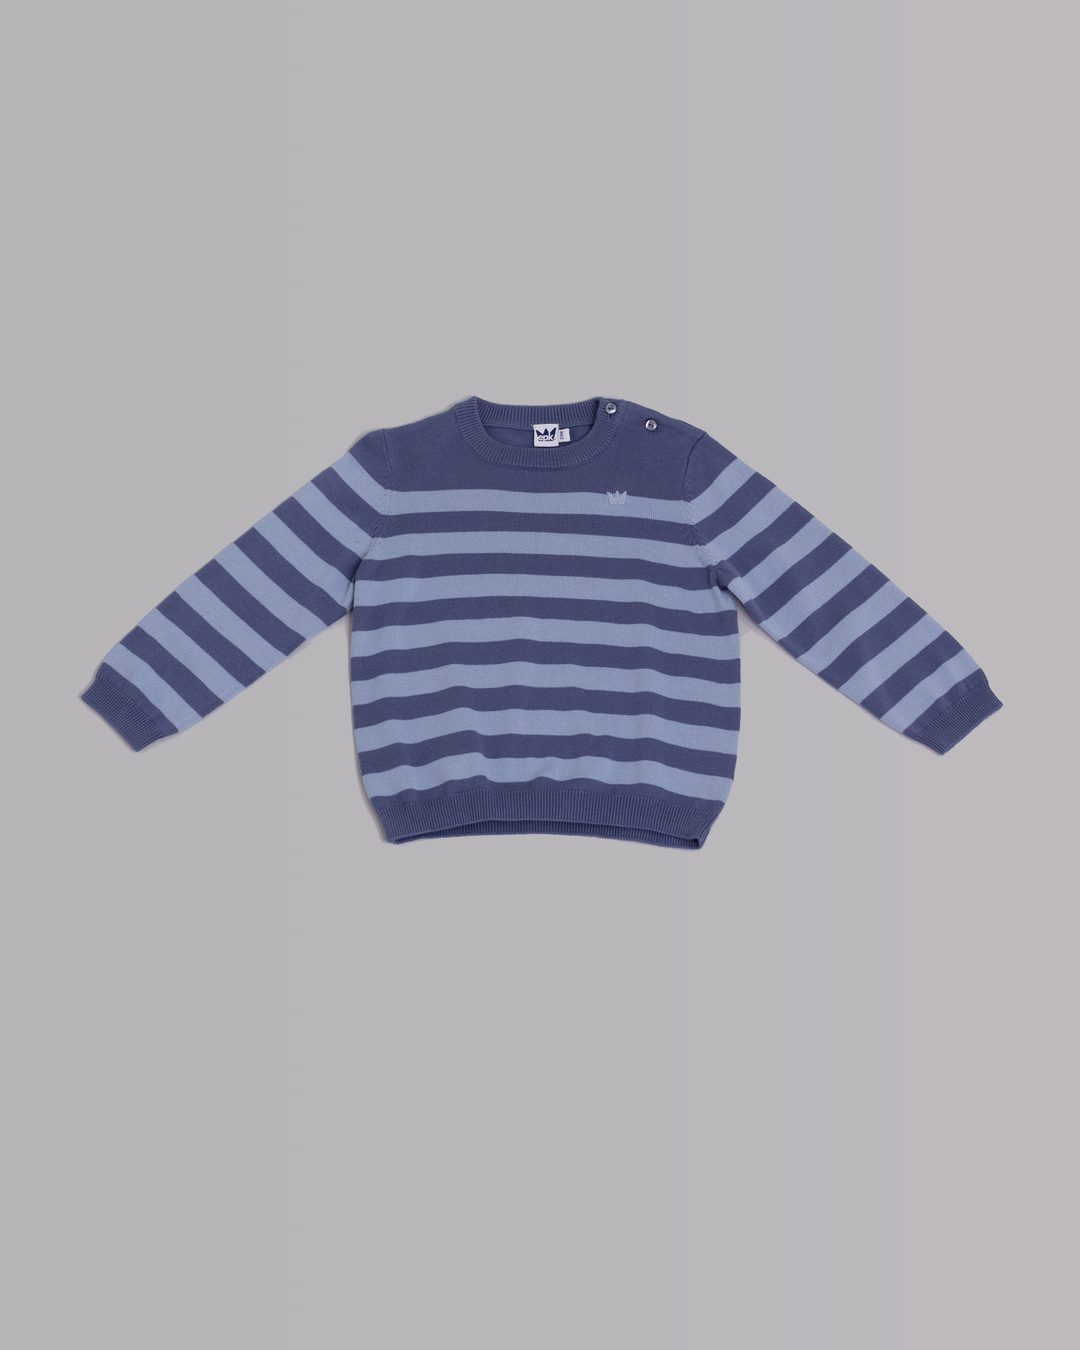 Suéter de rayas en dos tonos de azul